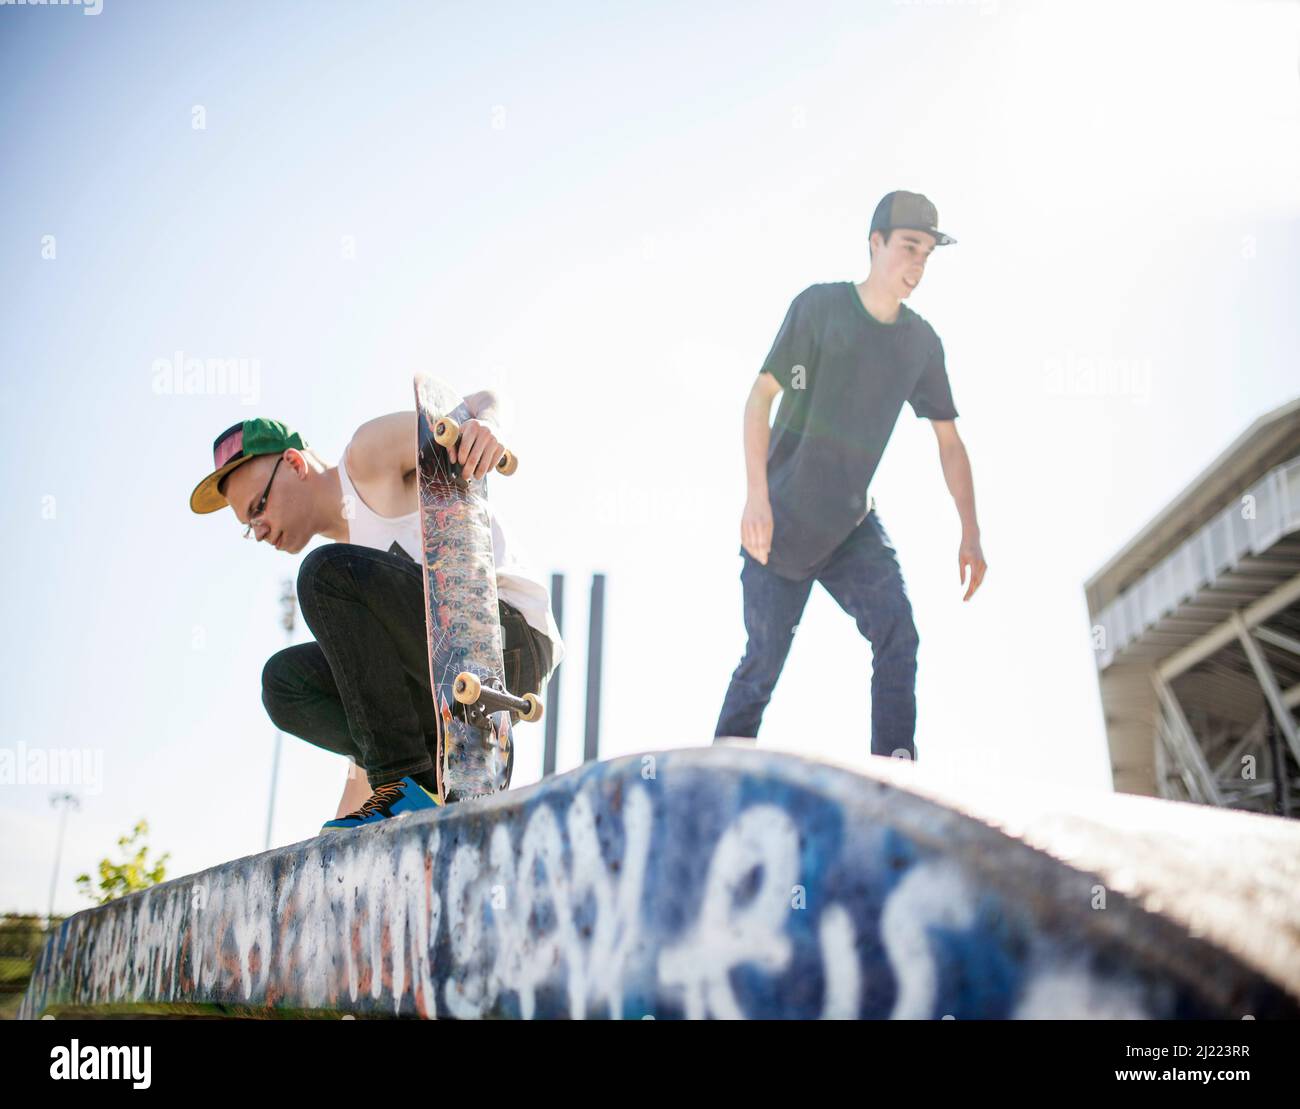 Deux jeunes skate, dans un parc de skate. Banque D'Images